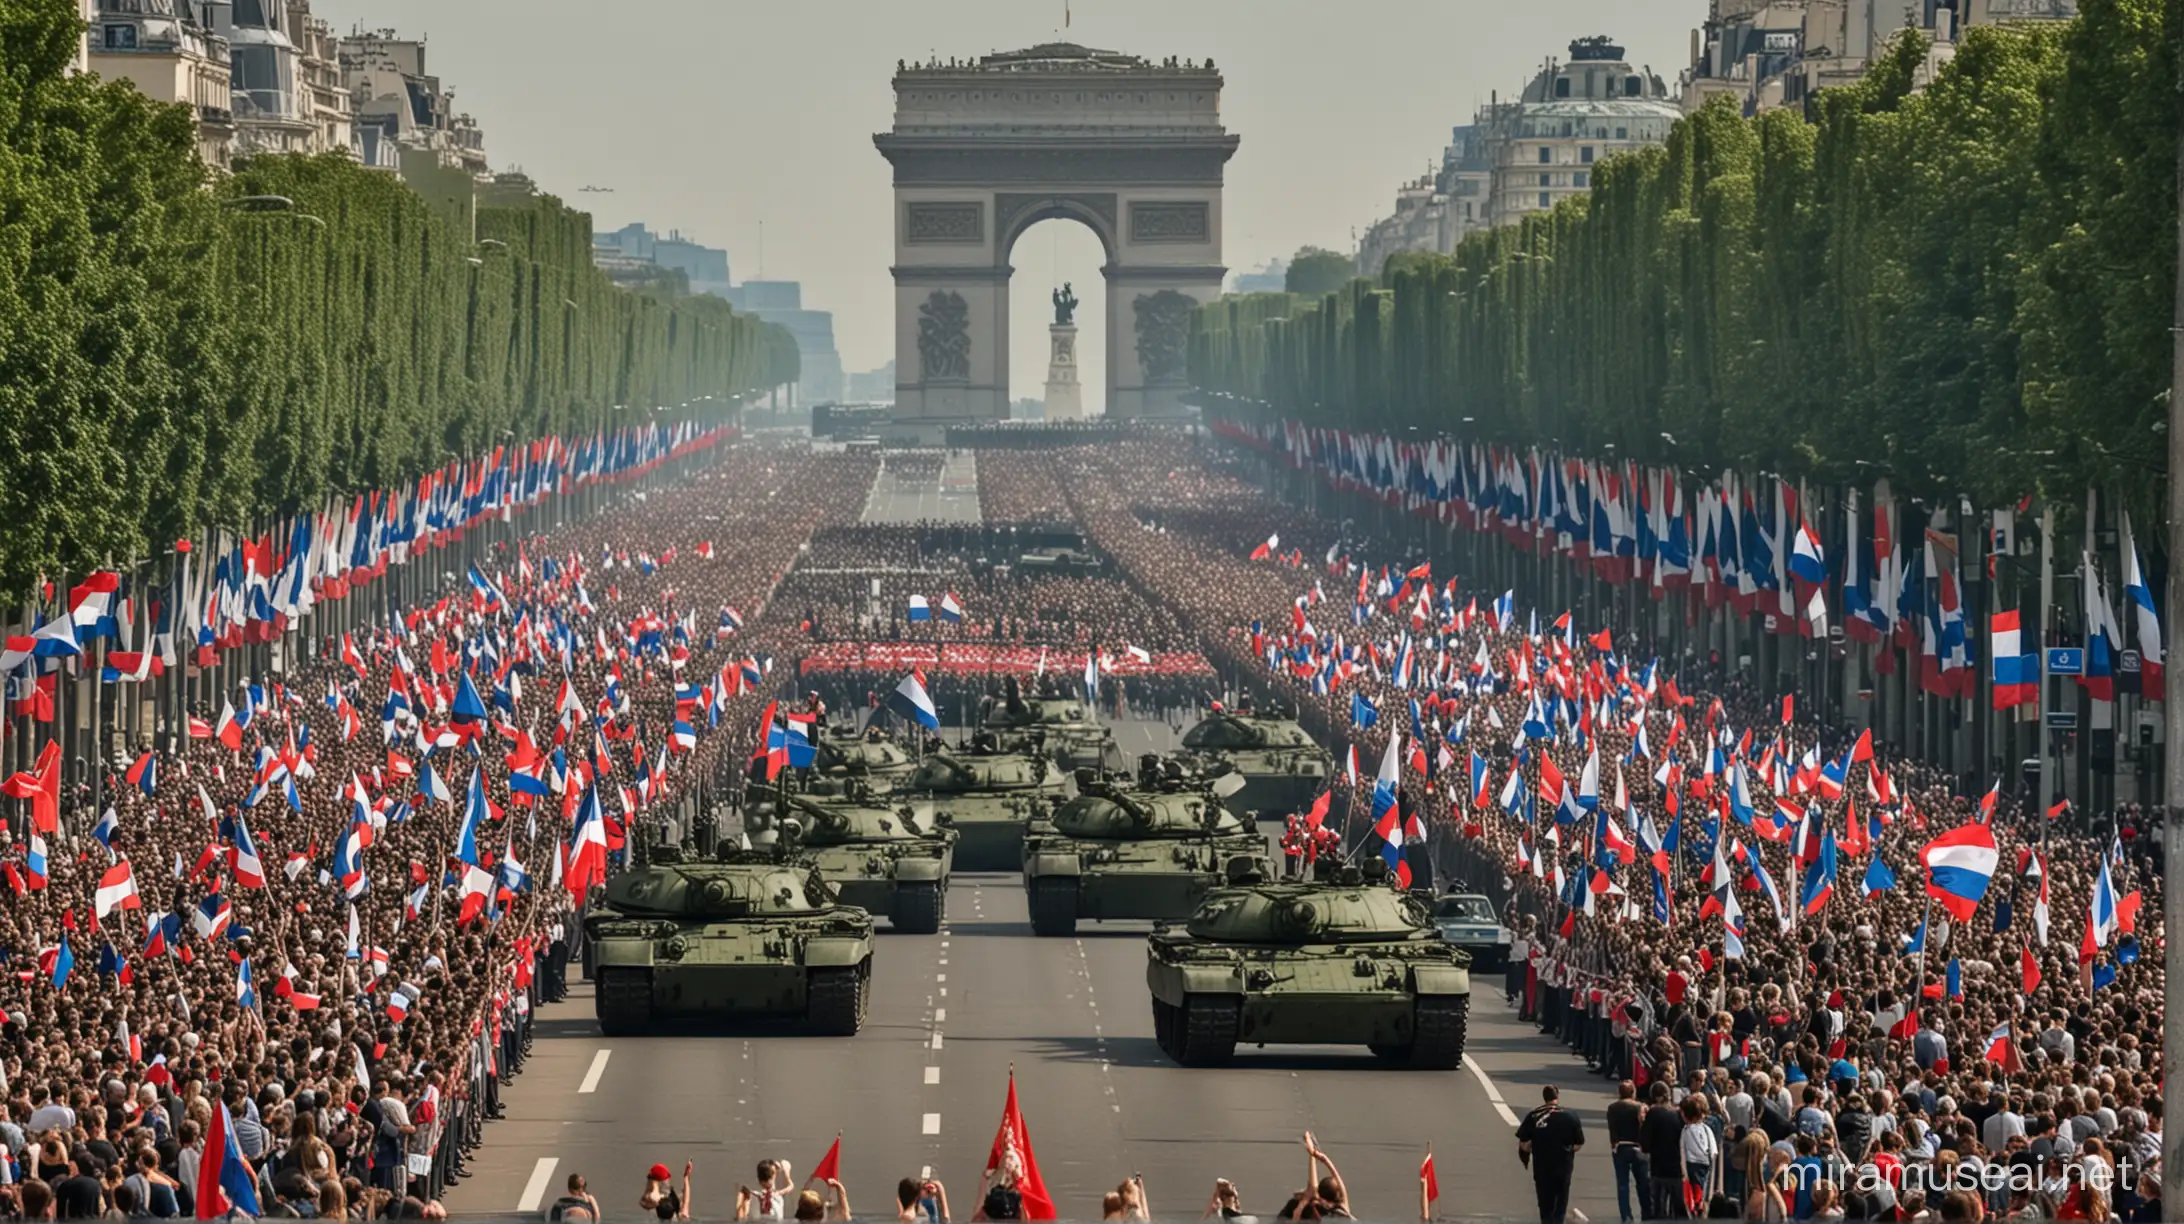 défilé de chars militaires russes sur les champ élysées a Paris avec la foule brandissant des drapeaux français et russes